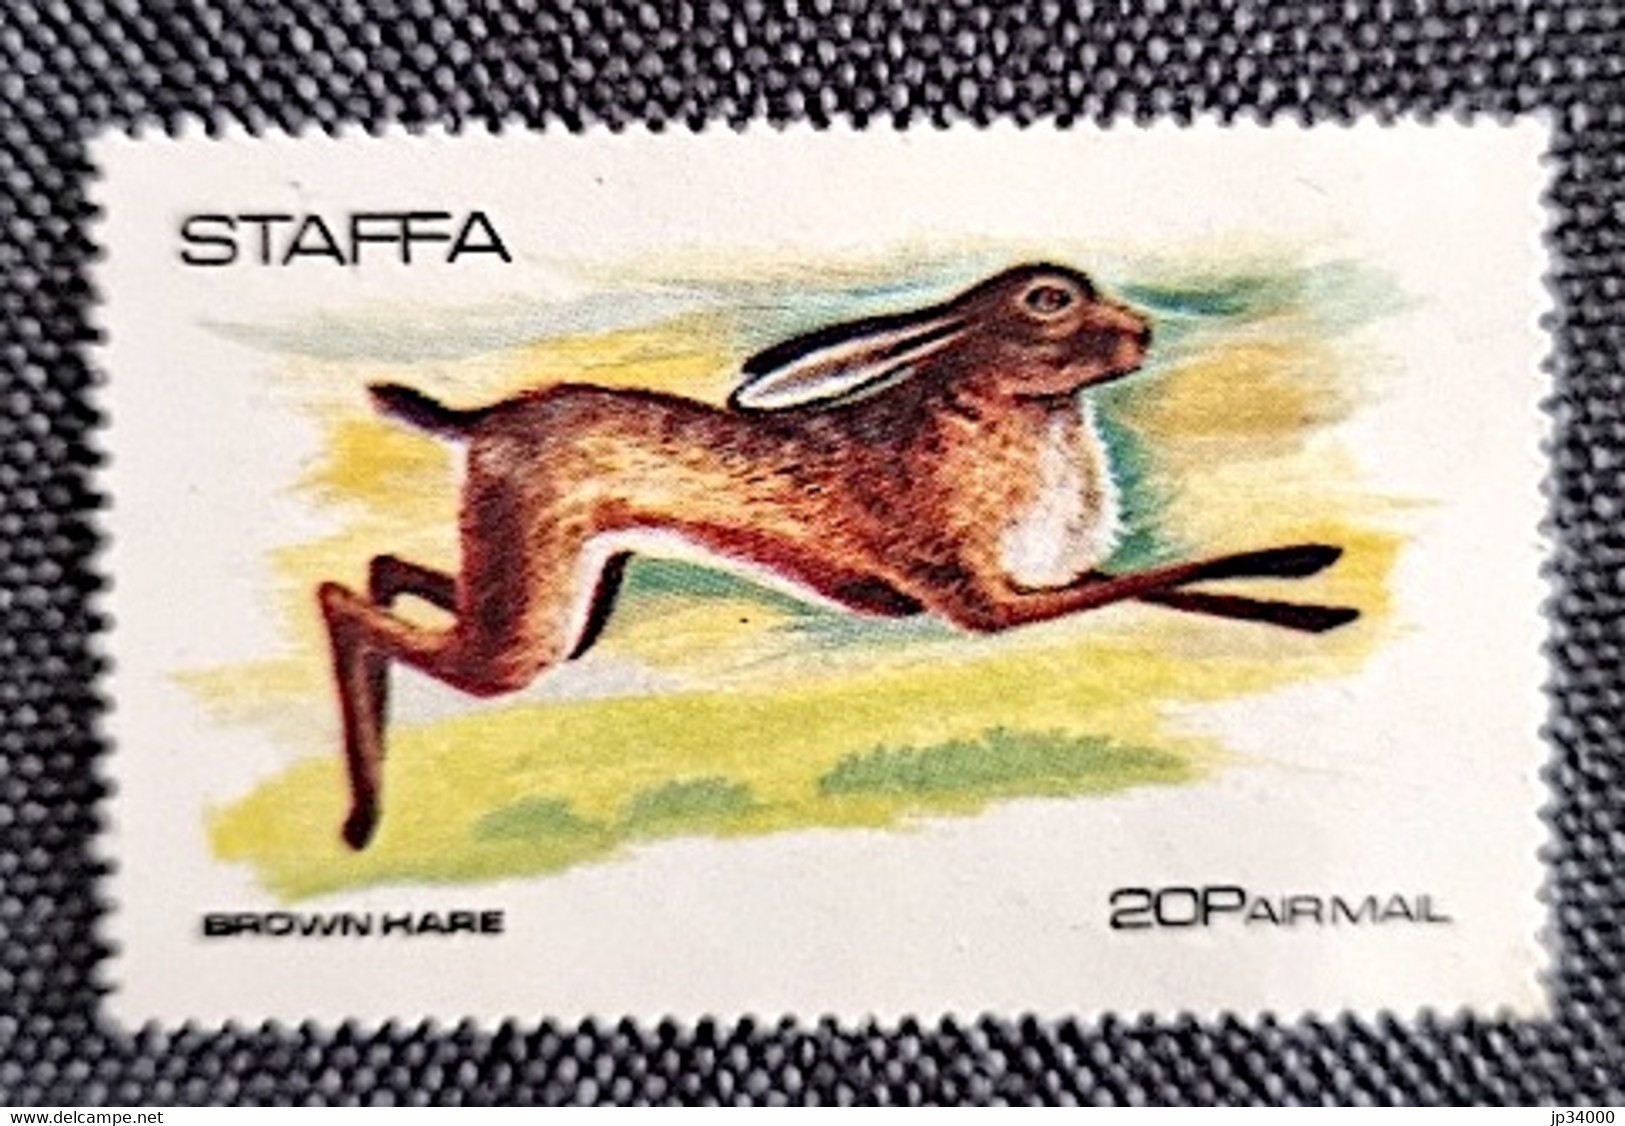 STAFFA Lapins, Lapin, Rabbit, Conejo. (1 Valeur Dentelée.) ** Neuf Sans Charnière - Lapins